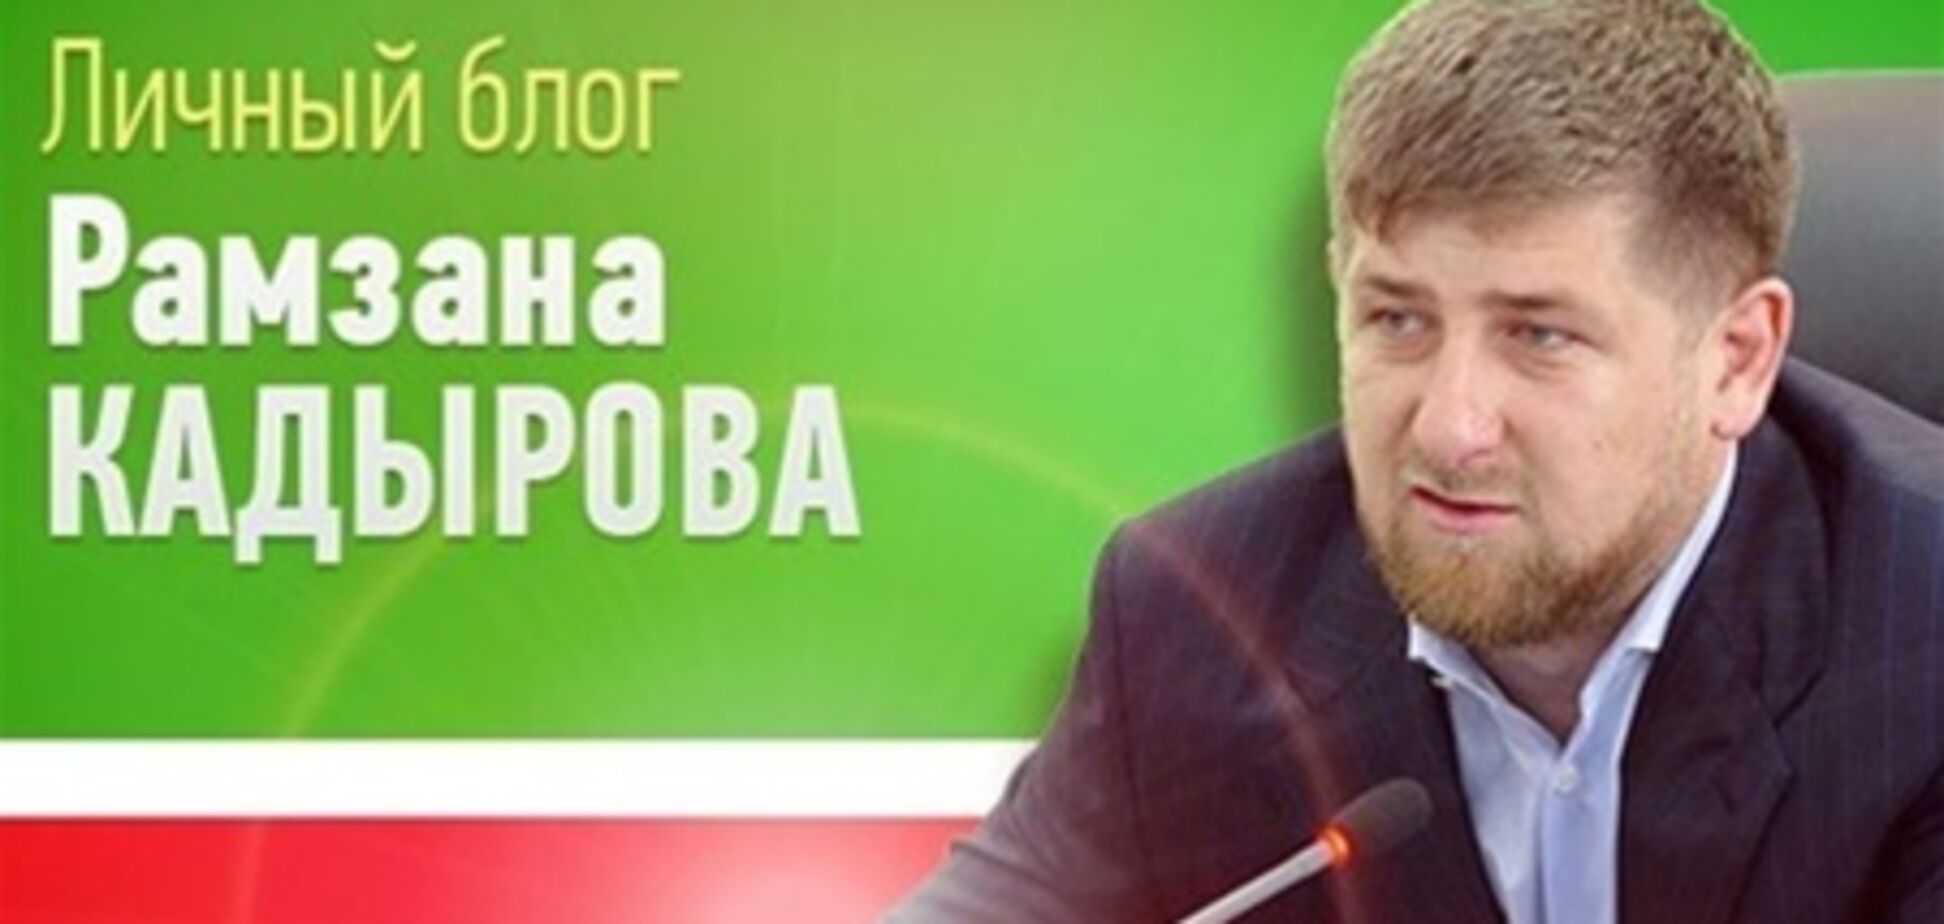 Кадыров 'оживил' блог в ЖЖ